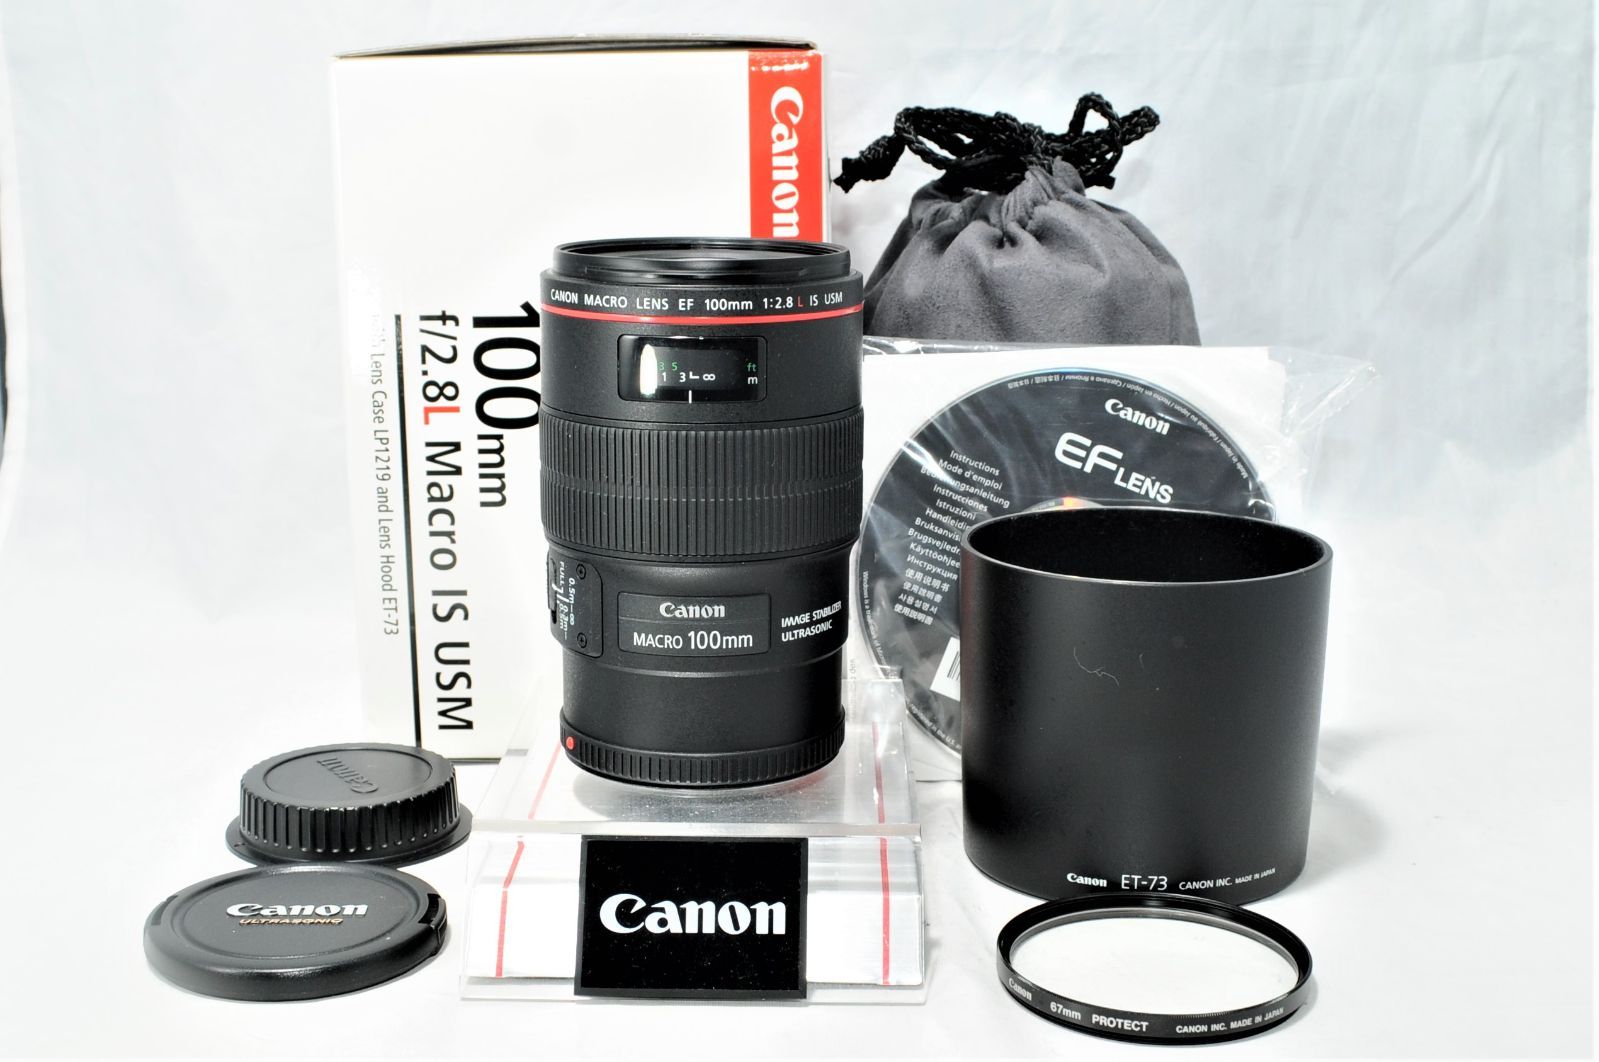 Canon 単焦点マクロレンズ EF100mm F2.8L マクロ IS USM フルサイズ